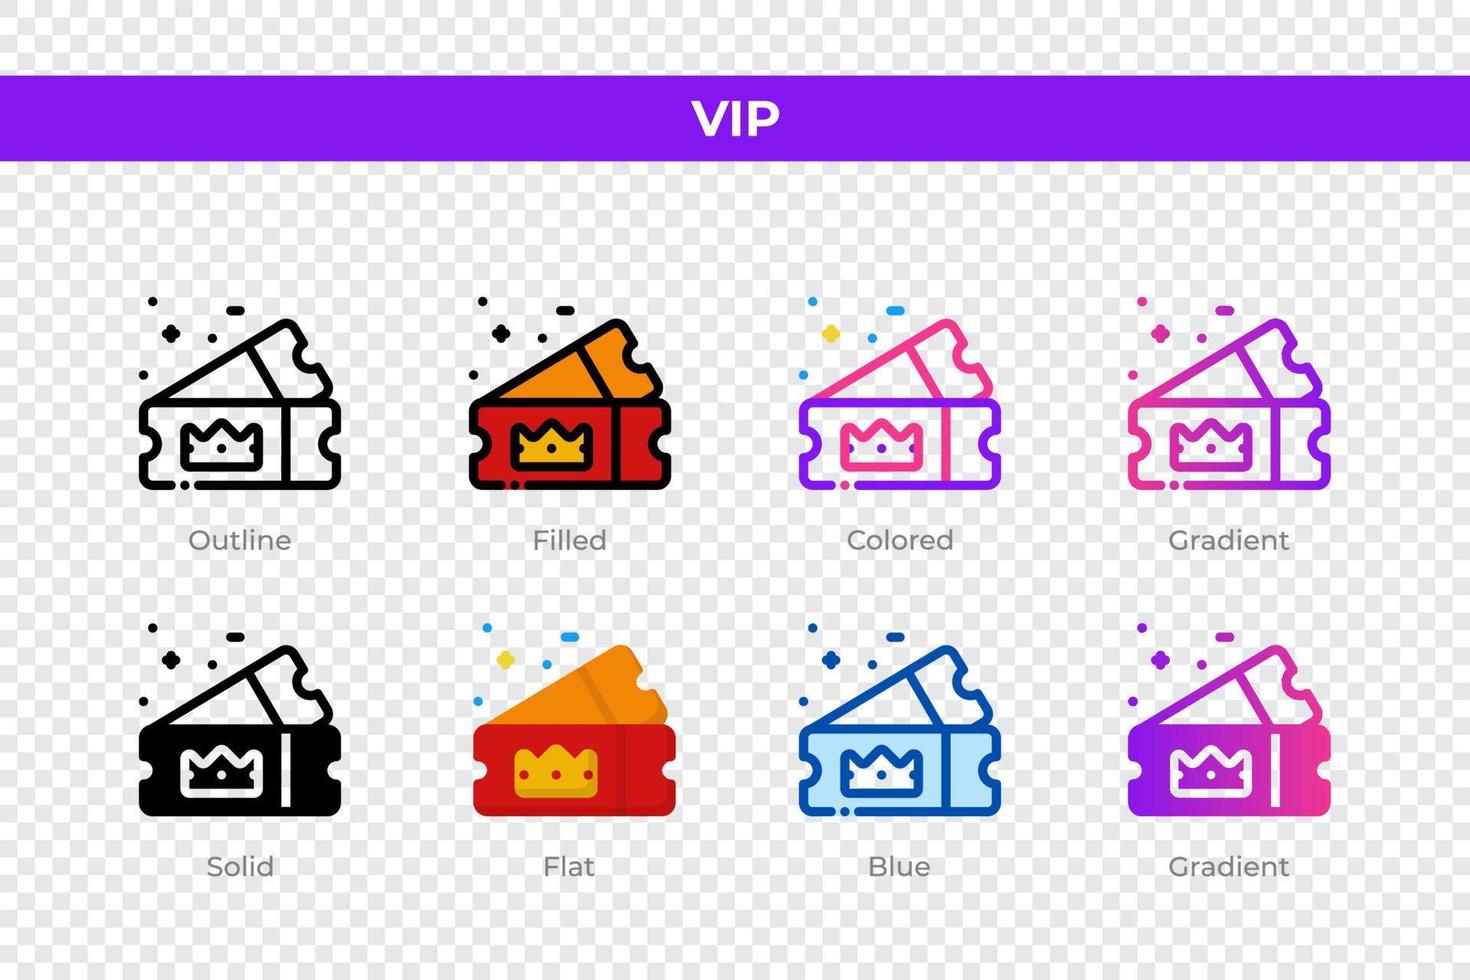 icônes vip dans un style différent. jeu d'icônes vip. symbole de vacances. jeu d'icônes de style différent. illustration vectorielle vecteur